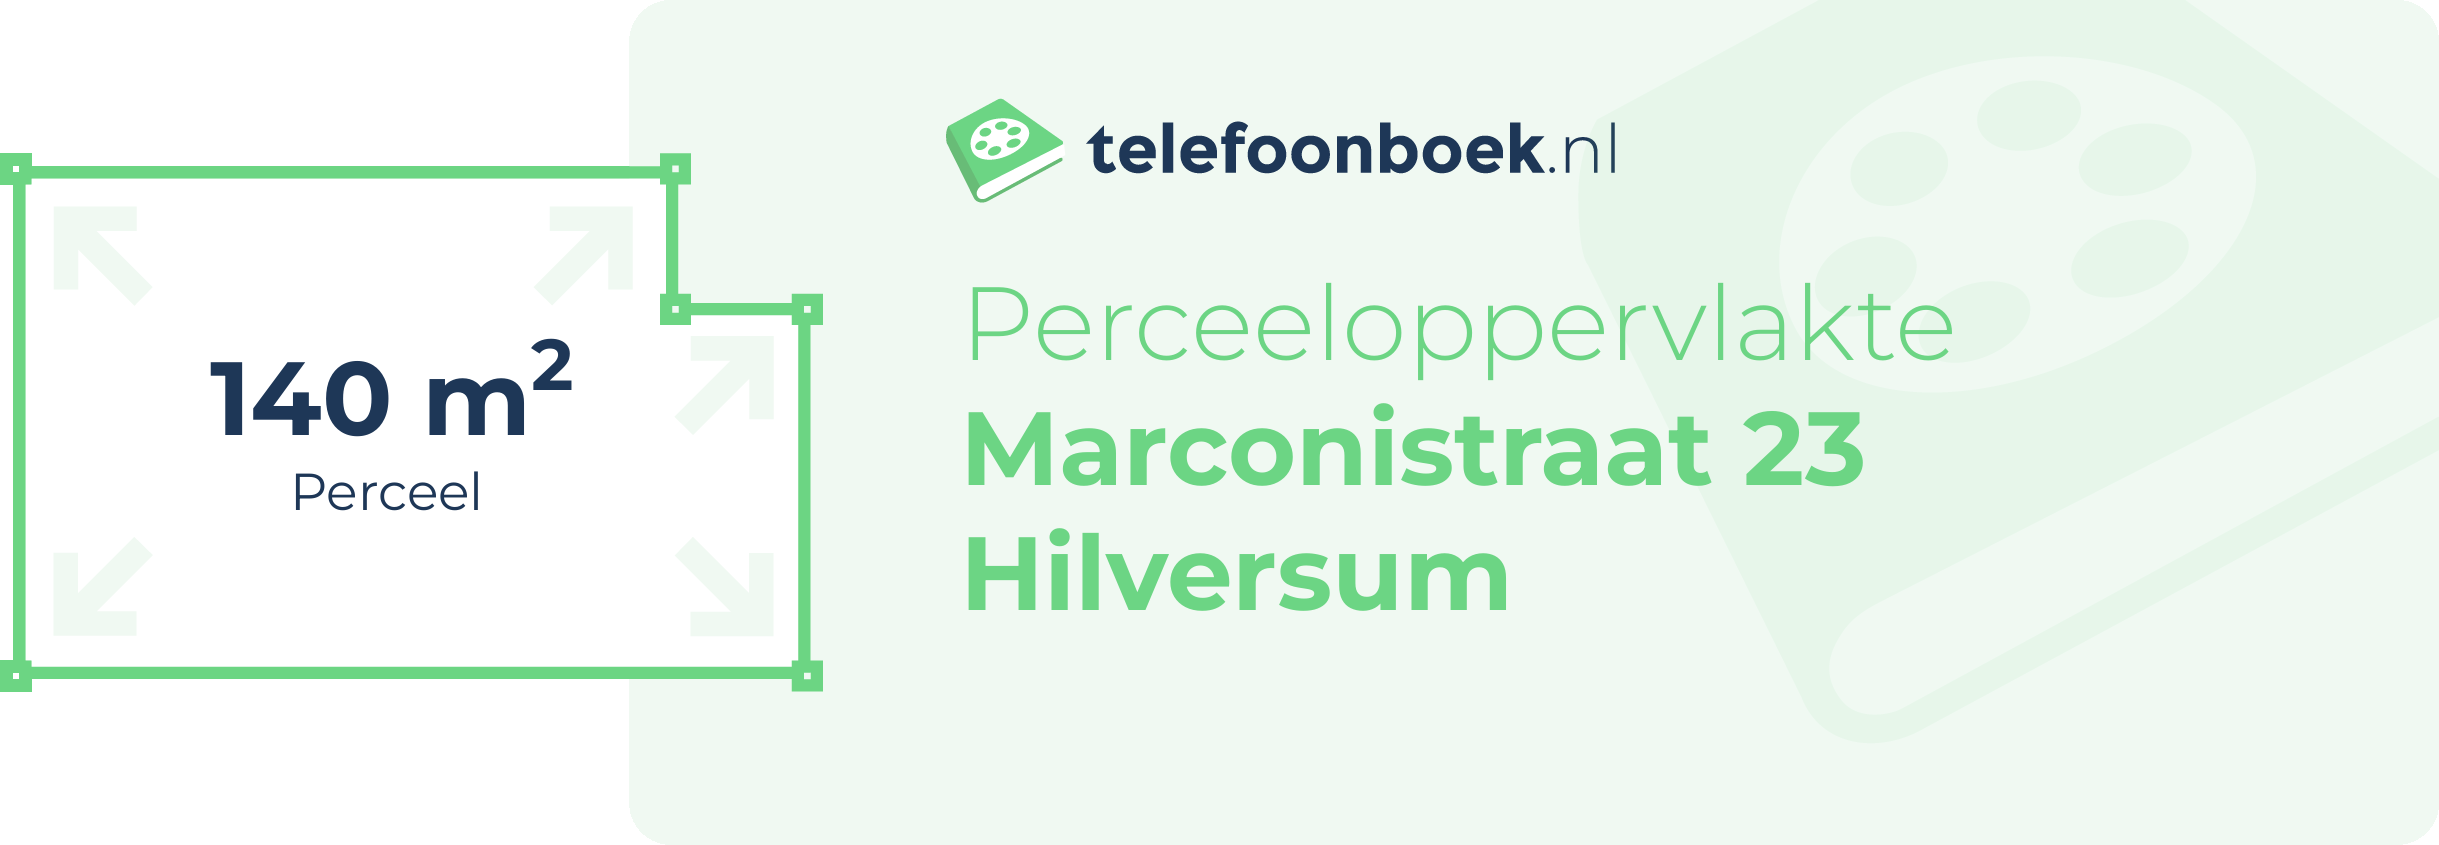 Perceeloppervlakte Marconistraat 23 Hilversum